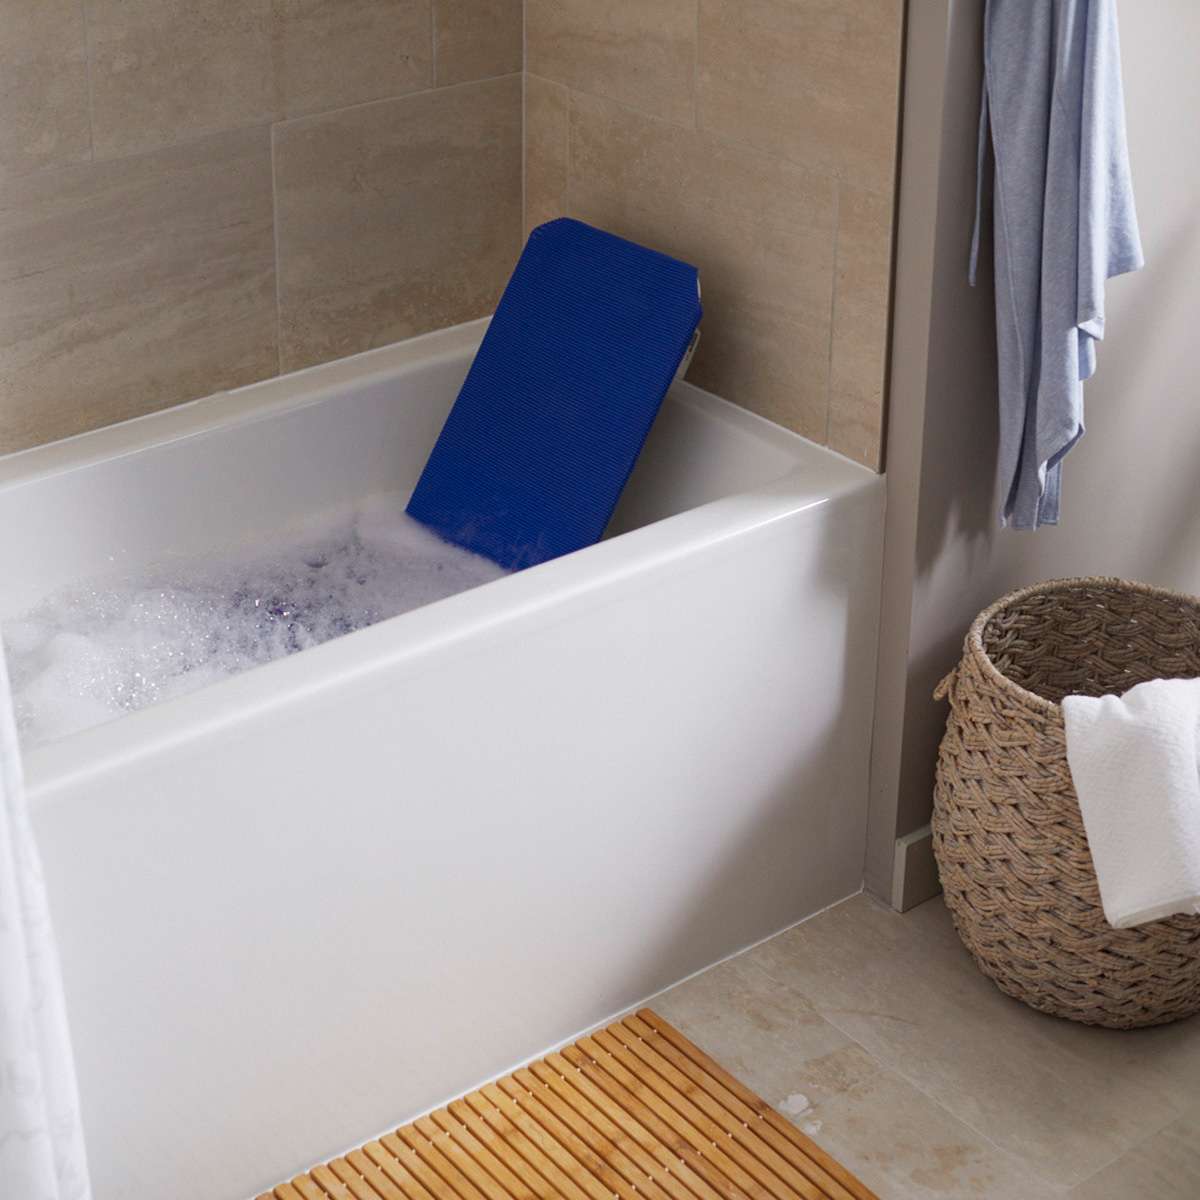 Invacare Aquatec R, Reclining Back Bath Lift Blue